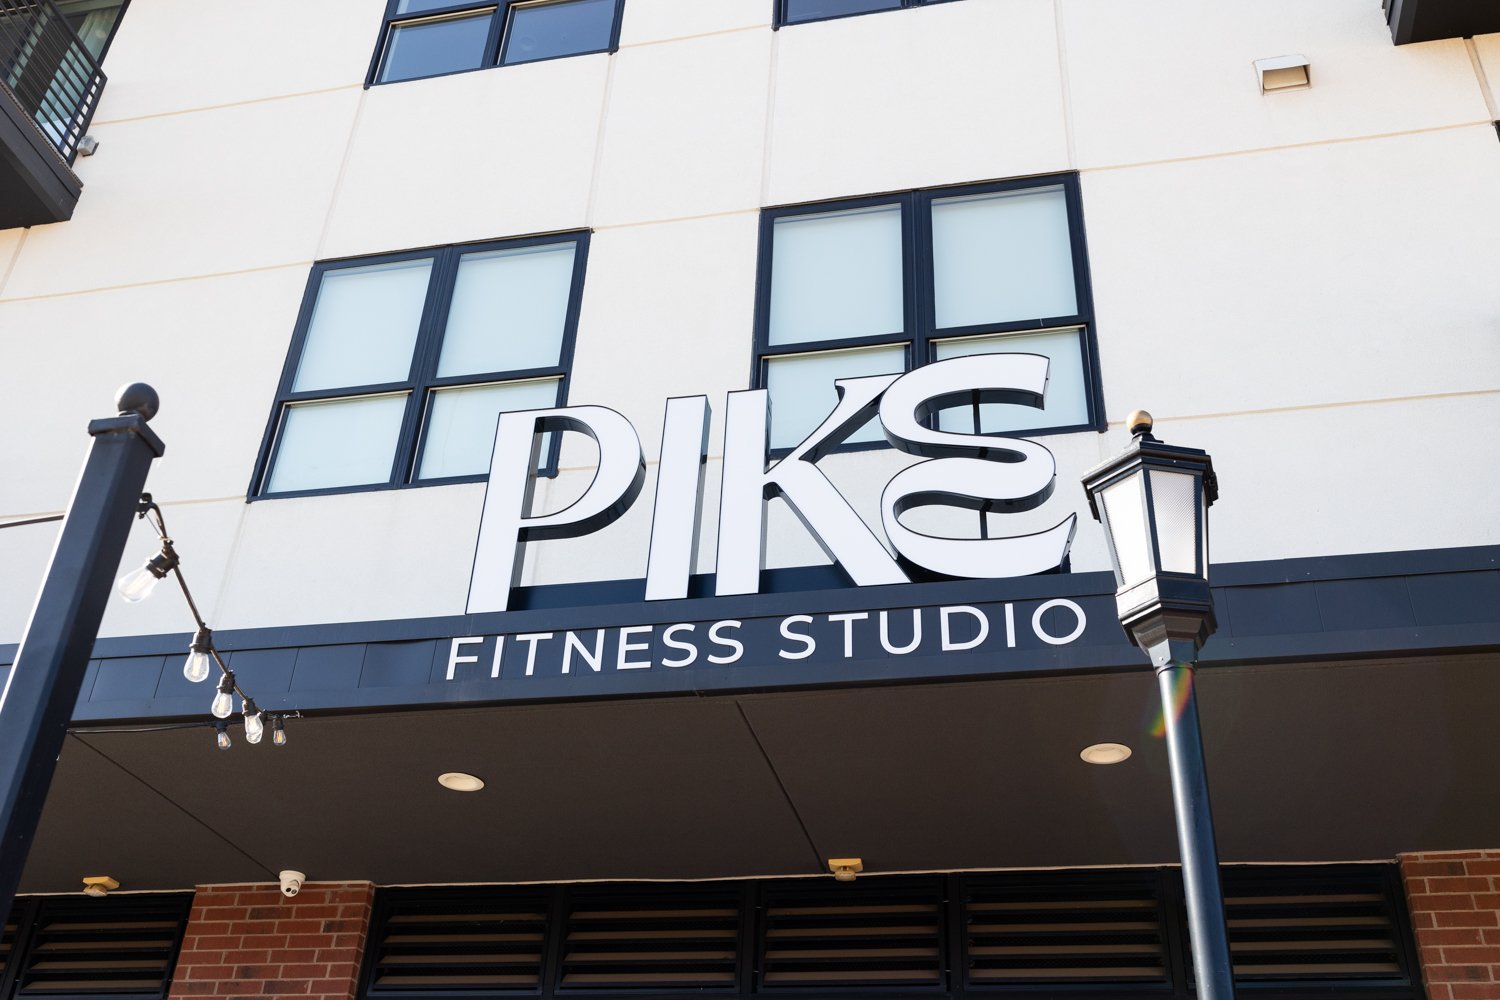 Pike Lagree fitness studio Edmond